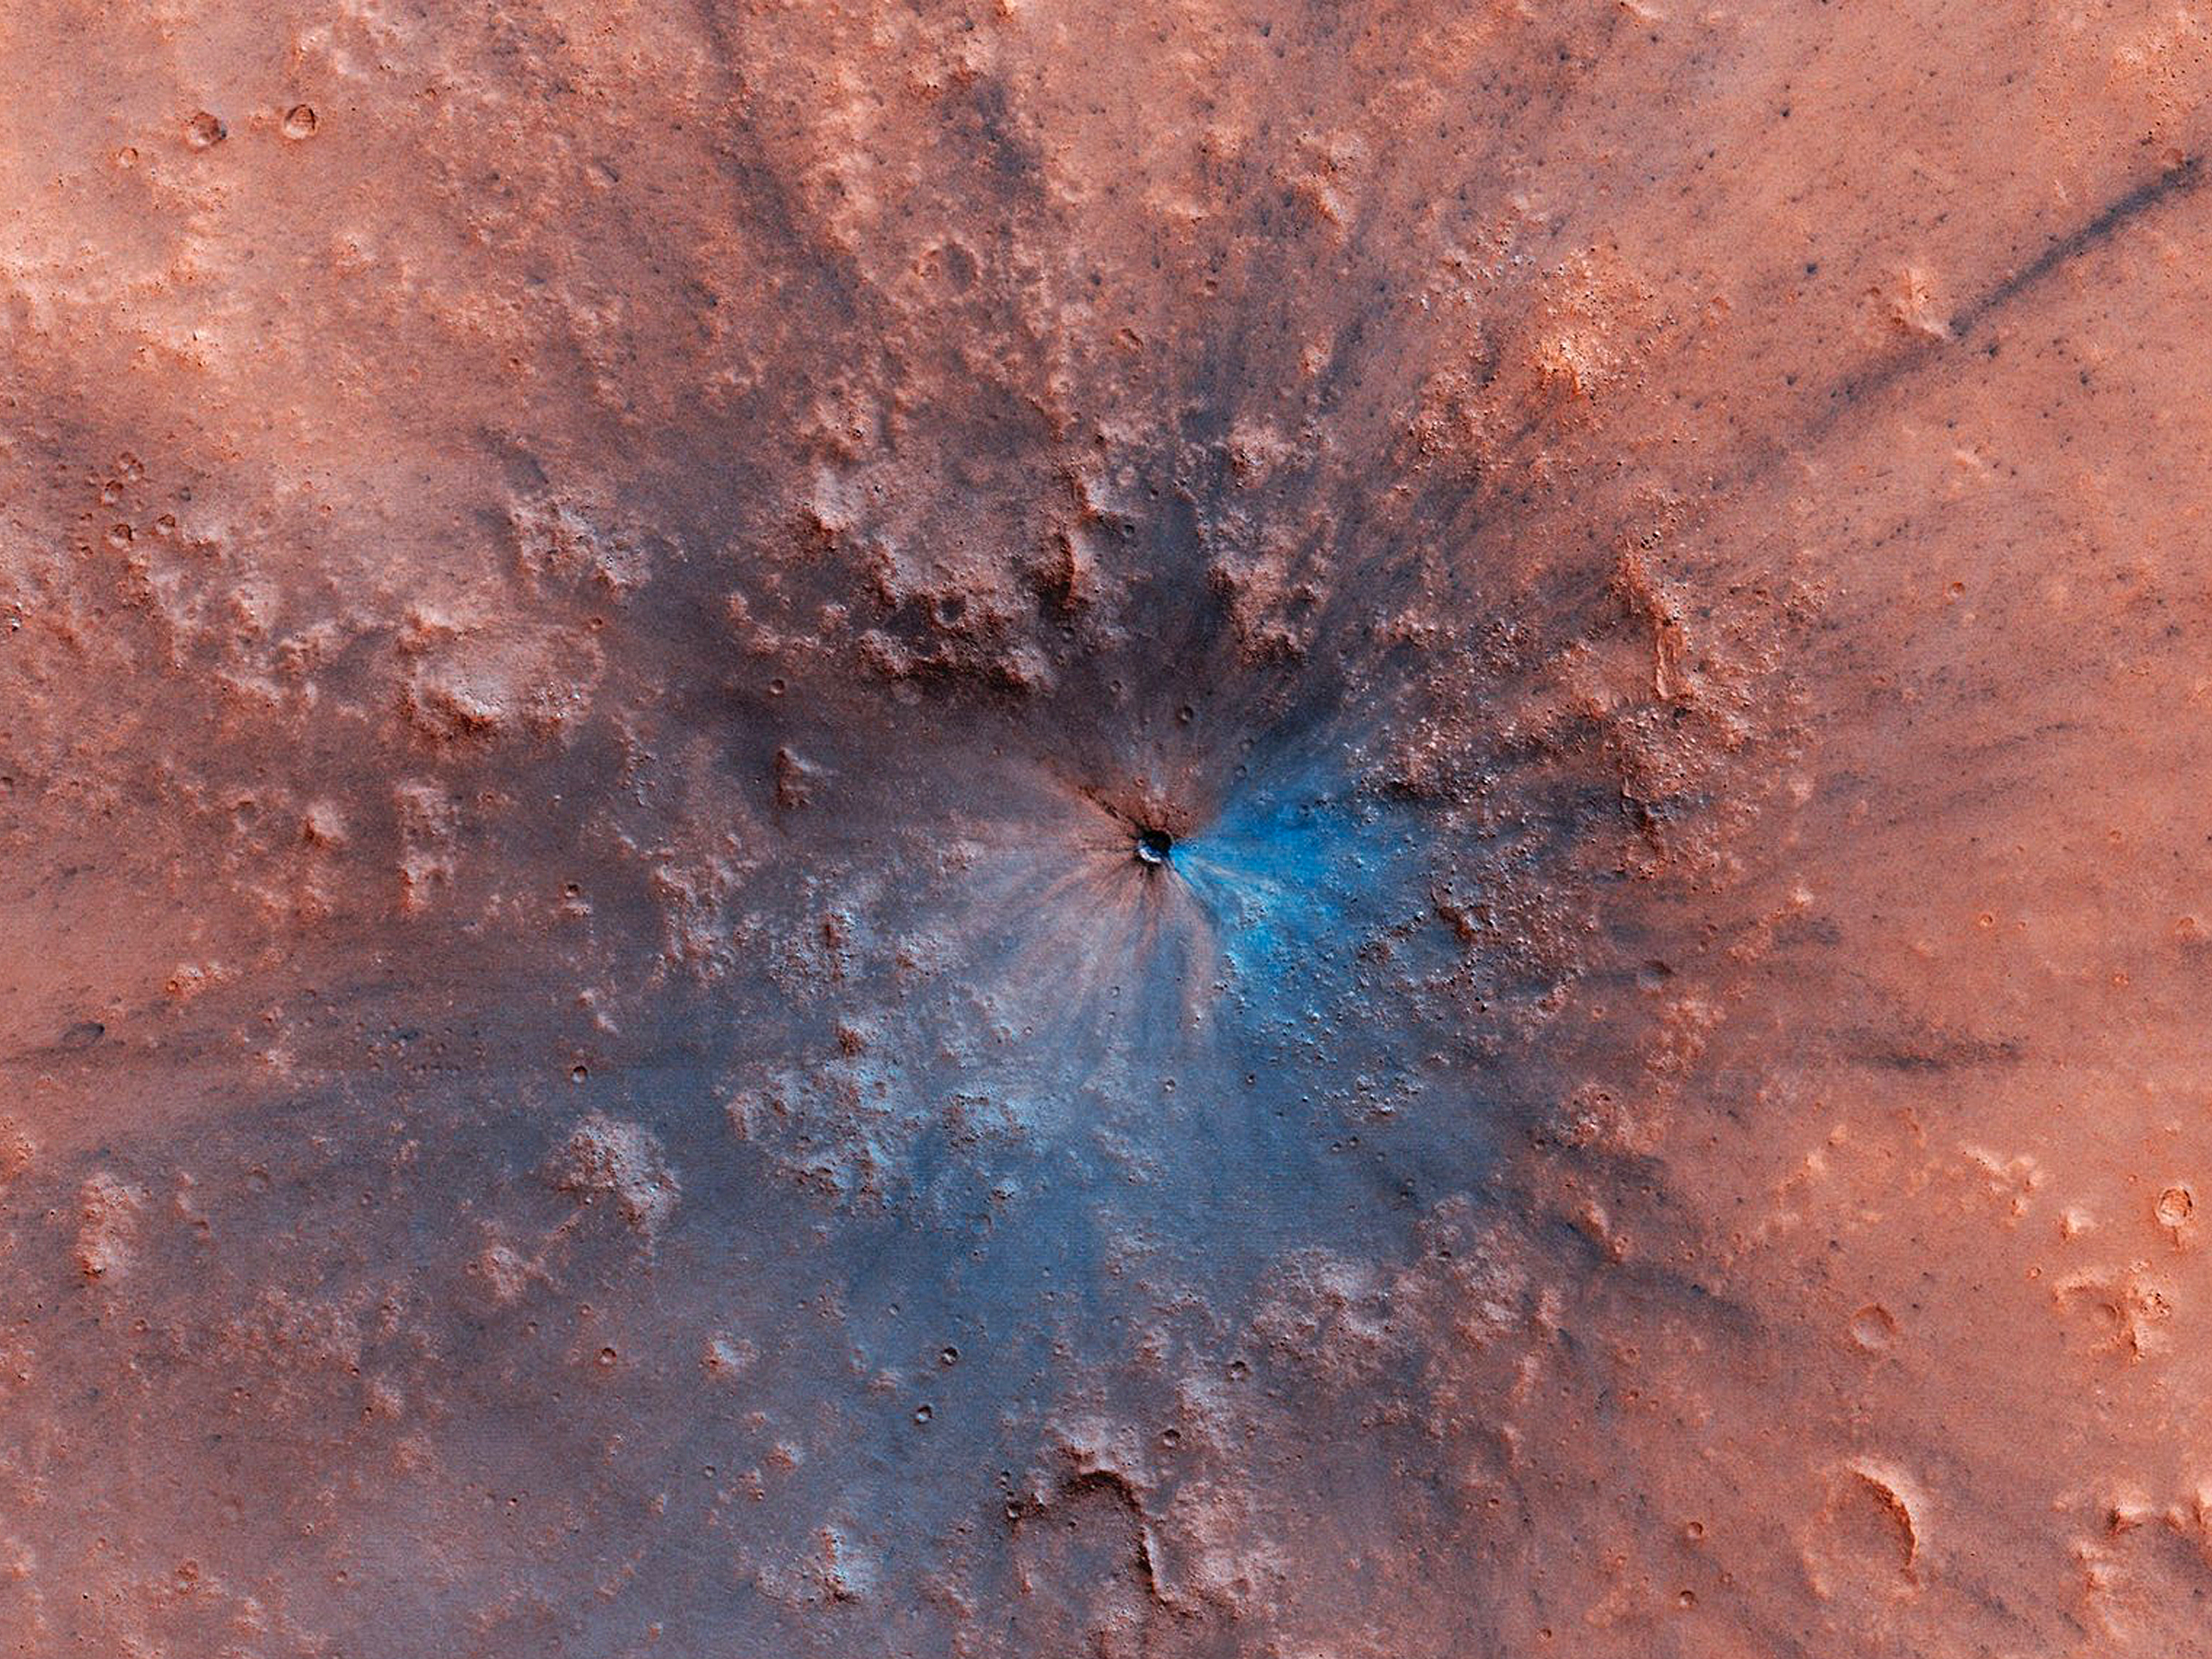 Un nouveau cratère sur Mars, apparu entre septembre 2016 et février 2019, apparaît comme une tache sombre sur le paysage sur cette photo haute résolution de Mars Reconnaissance Orbiter.